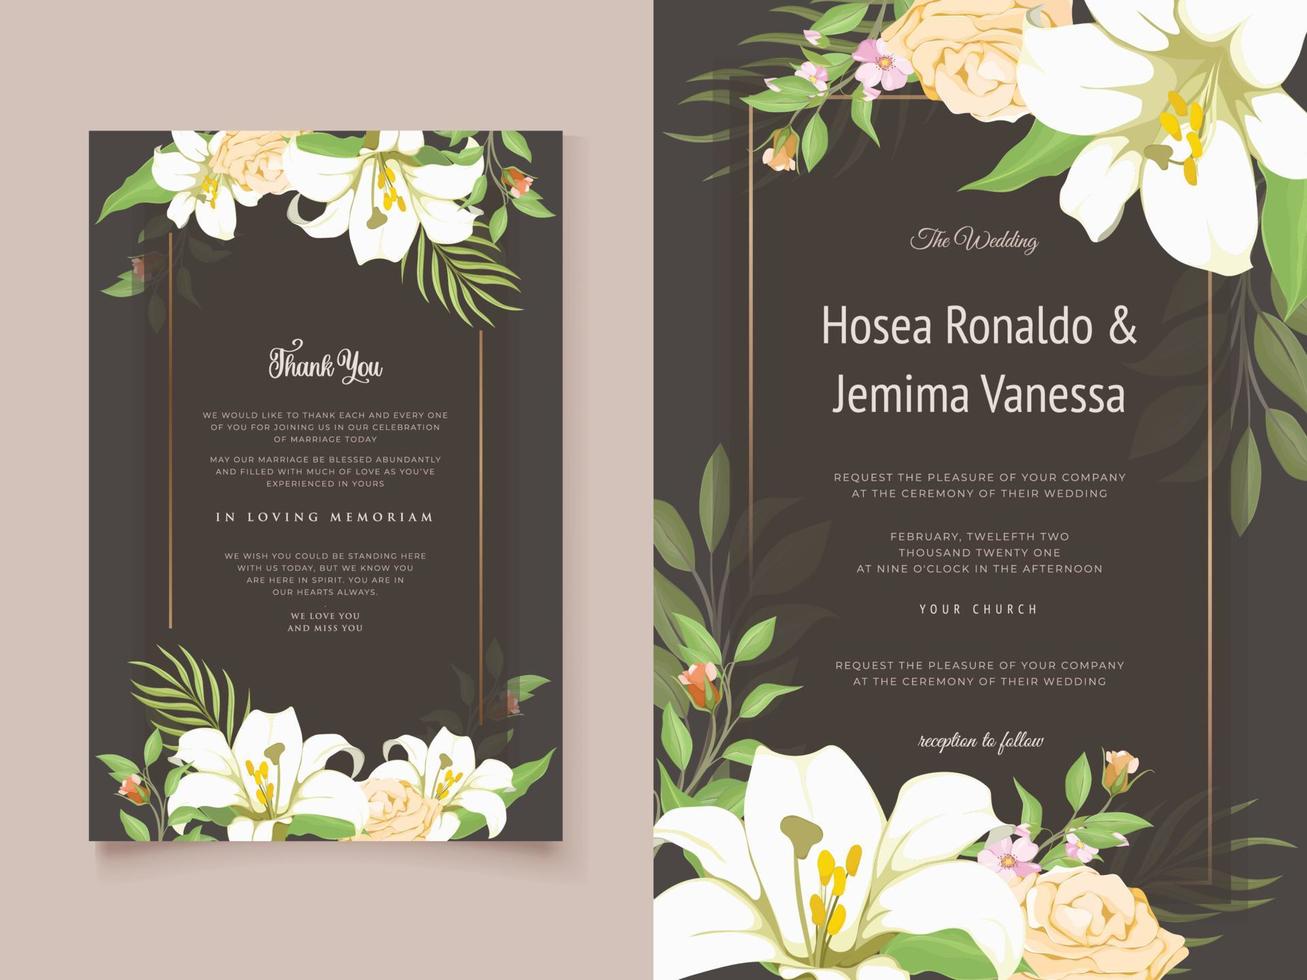 hermoso diseño de tarjeta de invitación de boda con flor de lirio y hojas vector